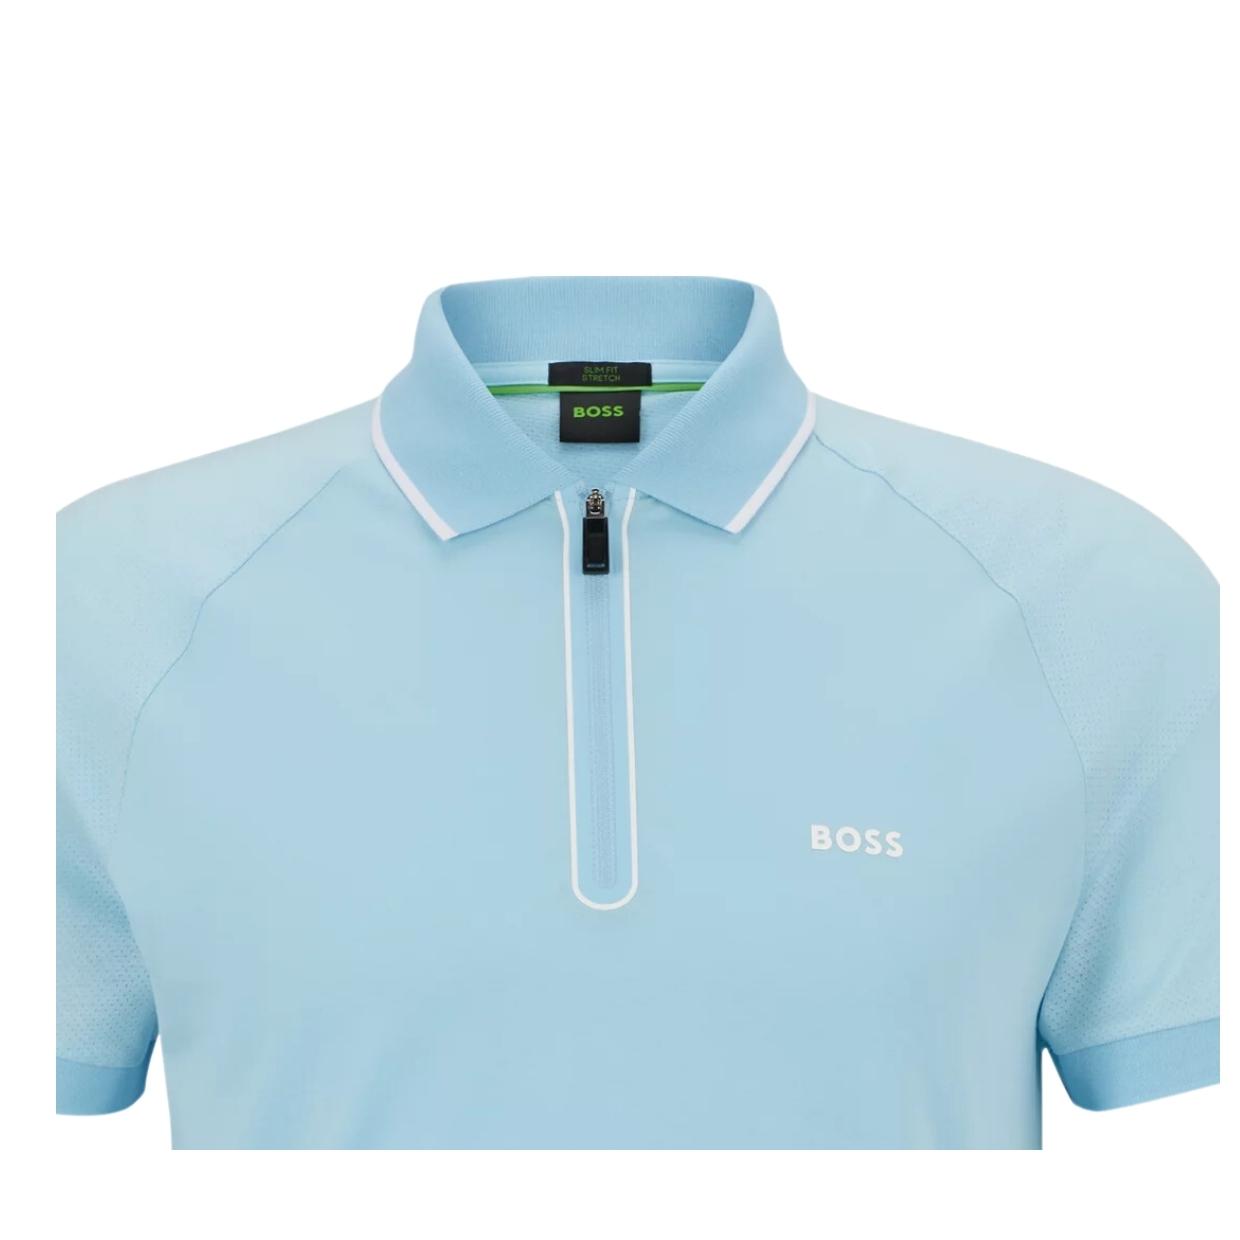 BOSS Philix Half Zip Light Blue Polo Shirt